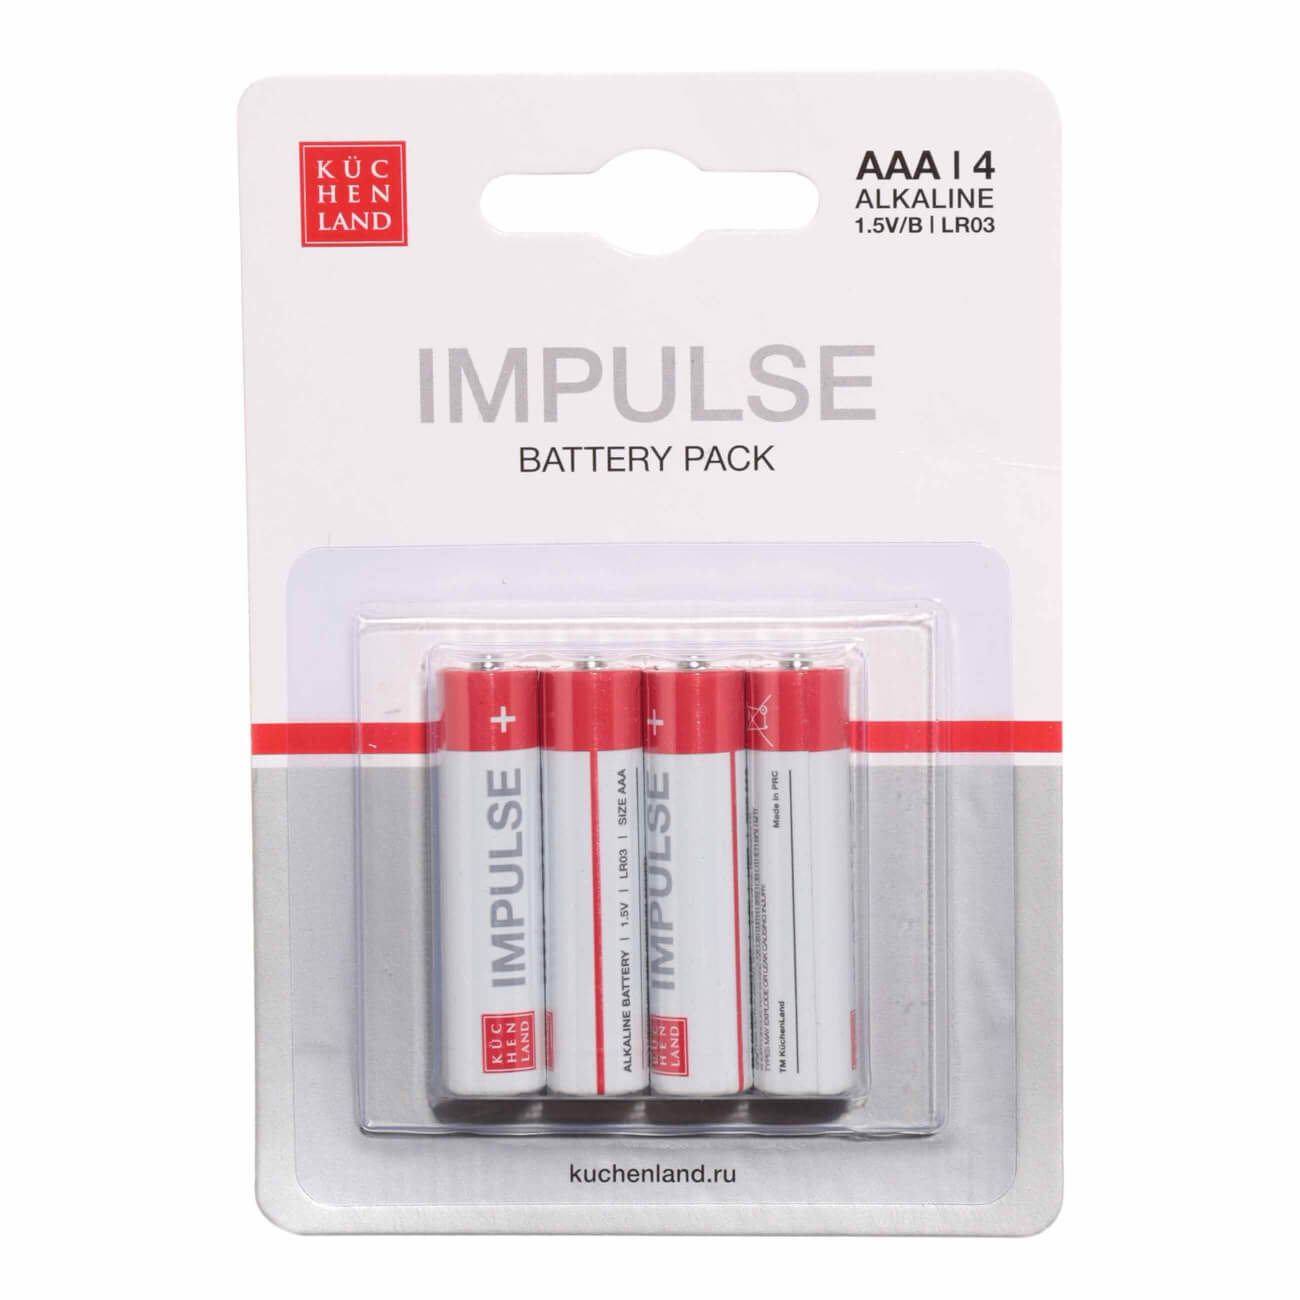 Батарейка AAA LR03, щелочная, 4 шт, Impulse батарейка aa lr6 щелочная 4 шт impulse